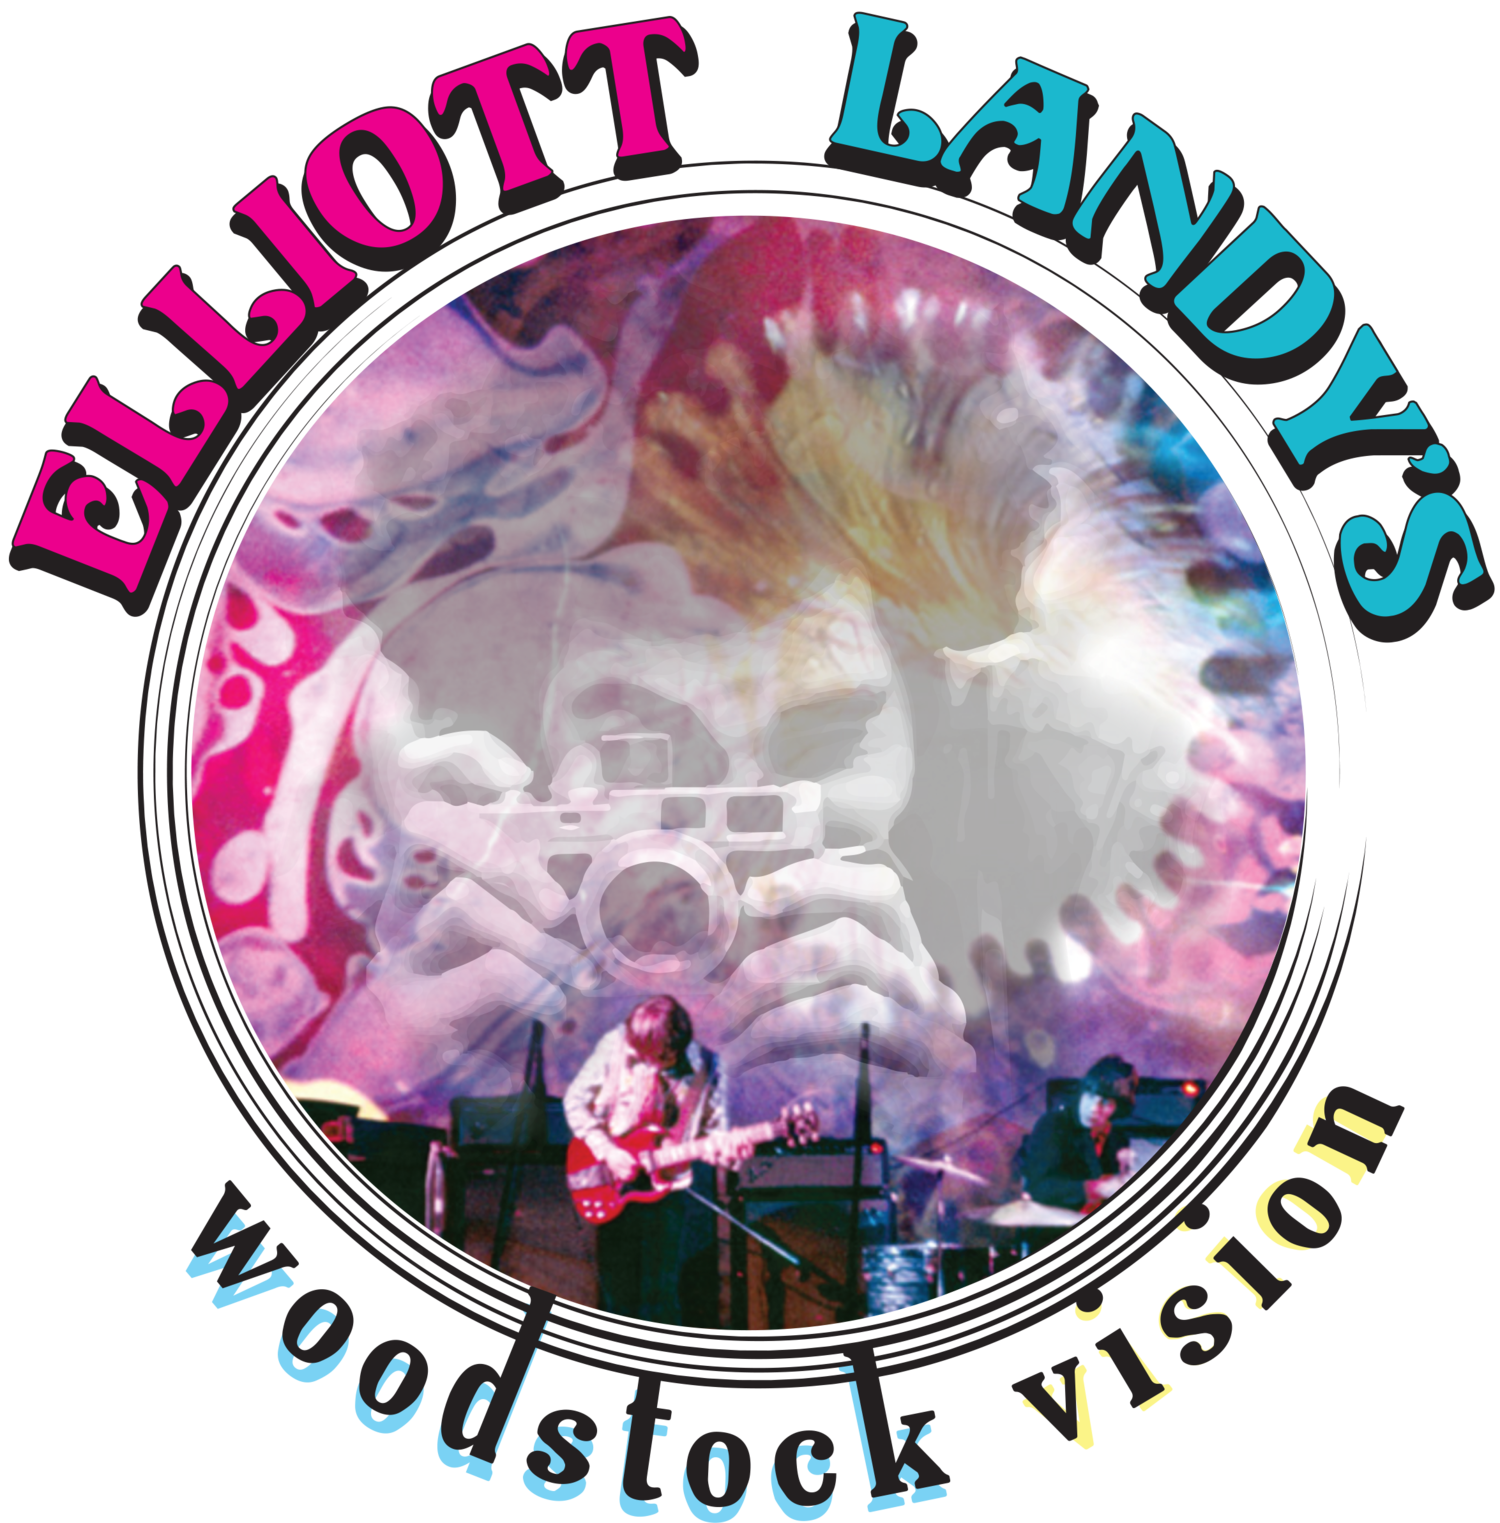 ELLIOTT LANDY'S WOODSTOCK EXPERIENCE